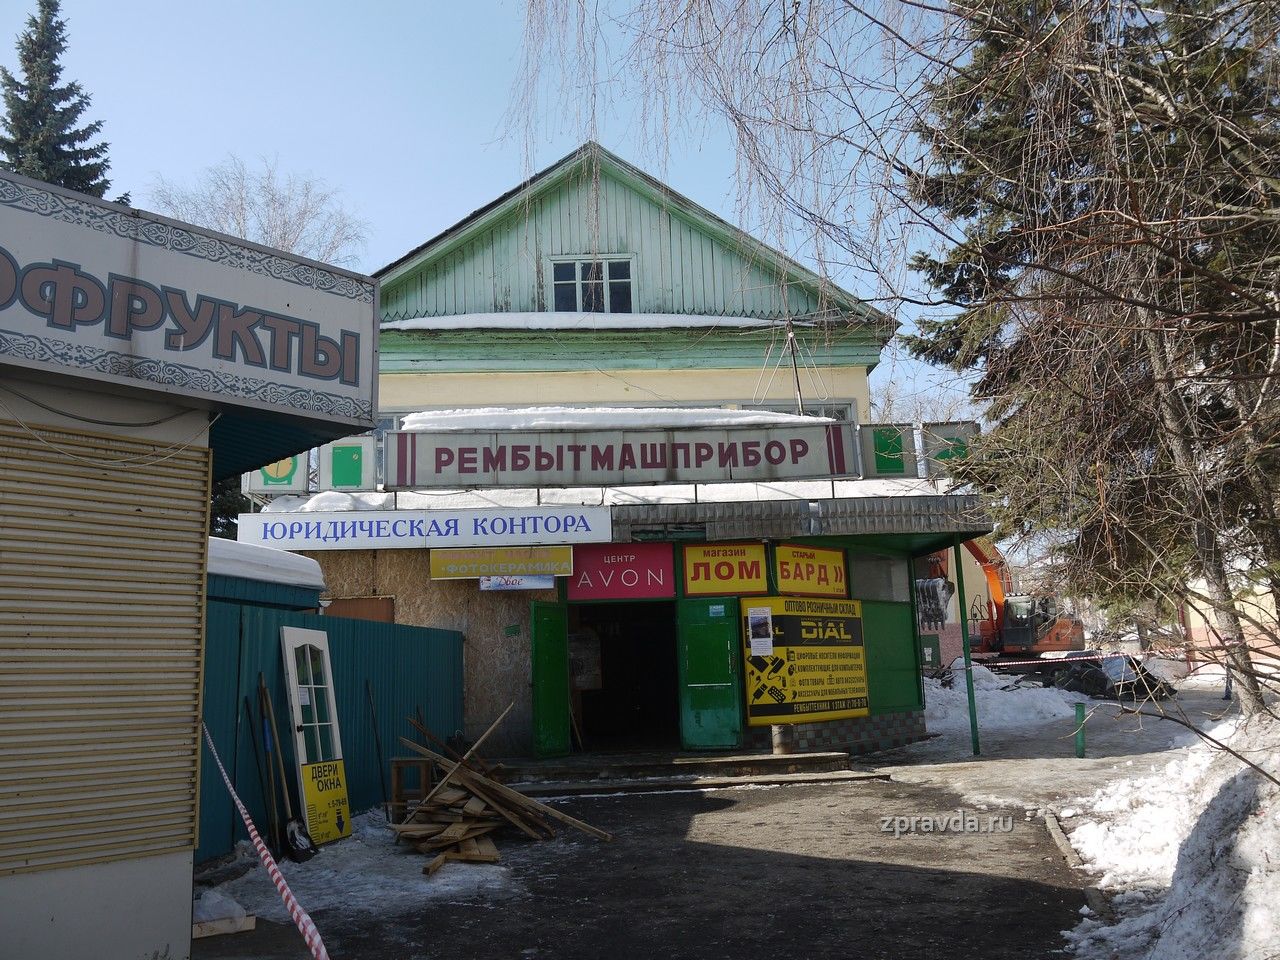 Прощай, "Рембыттехника": В Зеленодольске стартовал снос здания "Рембытмашприбора"